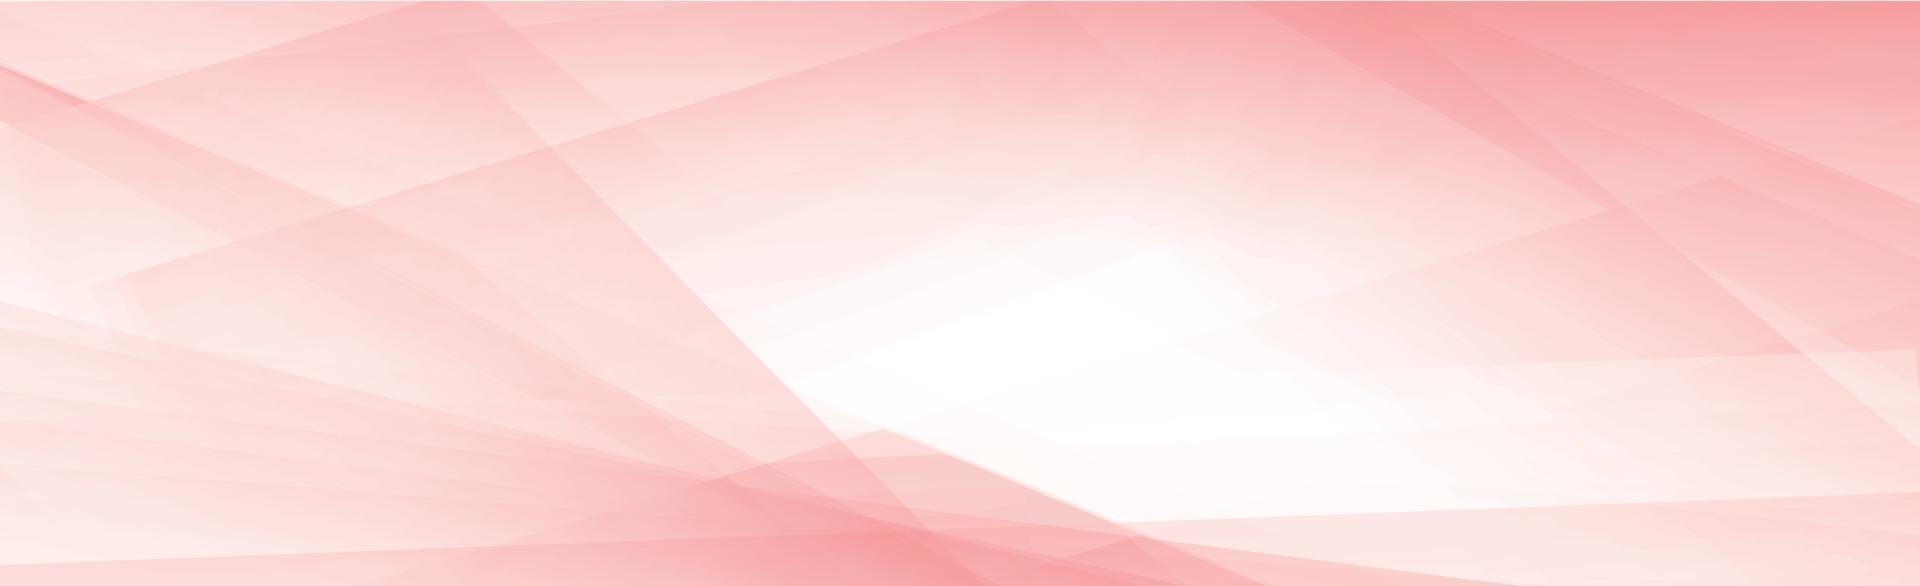 Panorama abstrakter Hintergrund mit verschiedenen Schattierungen von Rot - Vektor